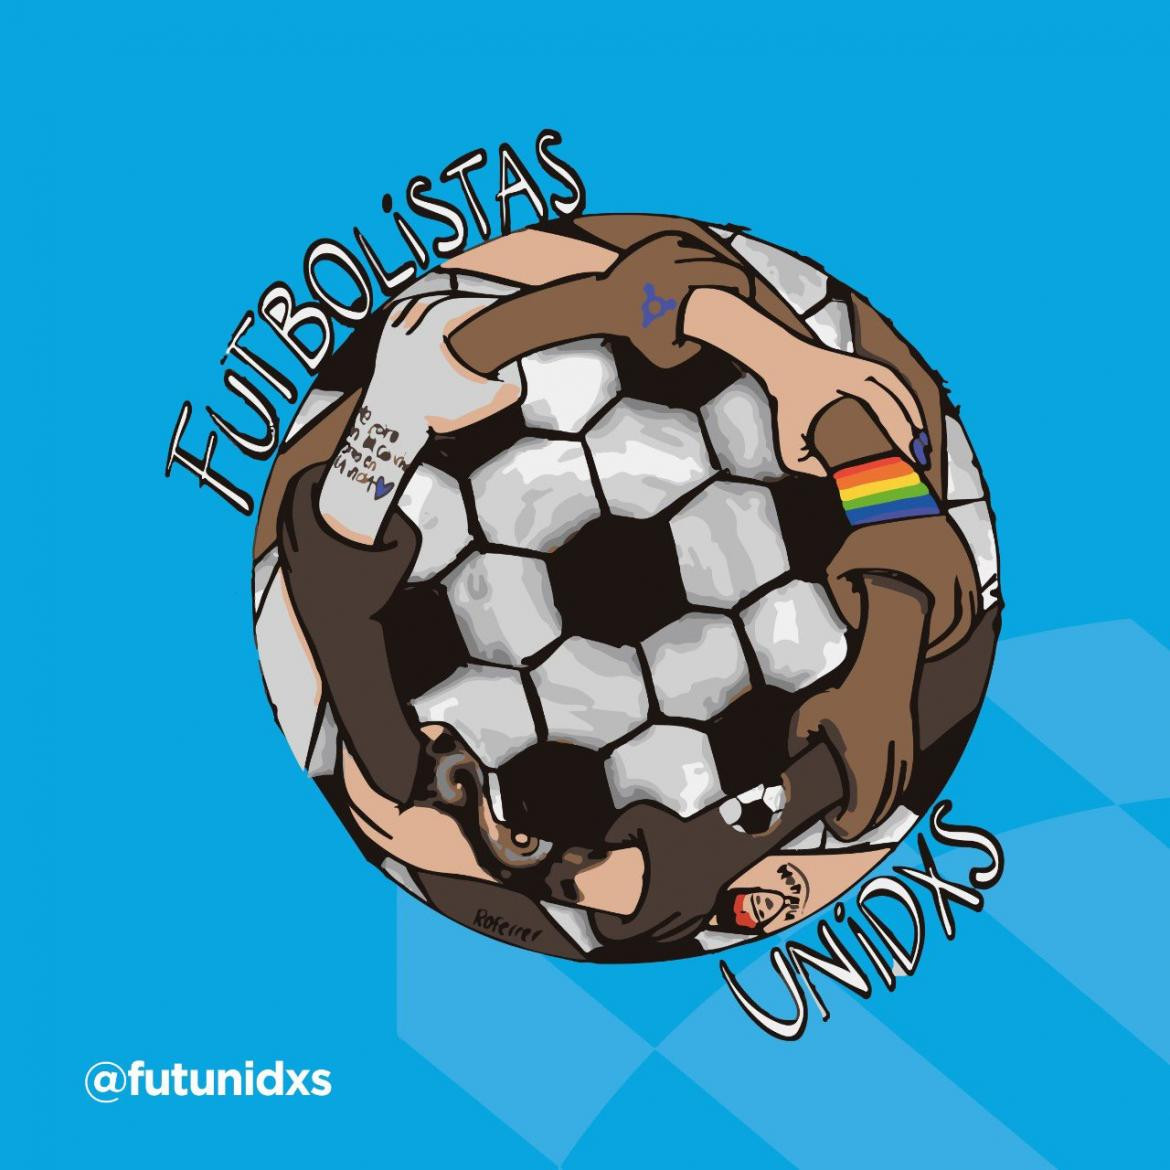 Pelota de fútbol inclusiva, jugadores y jugadoras, Twitter Futbolistas Unidos